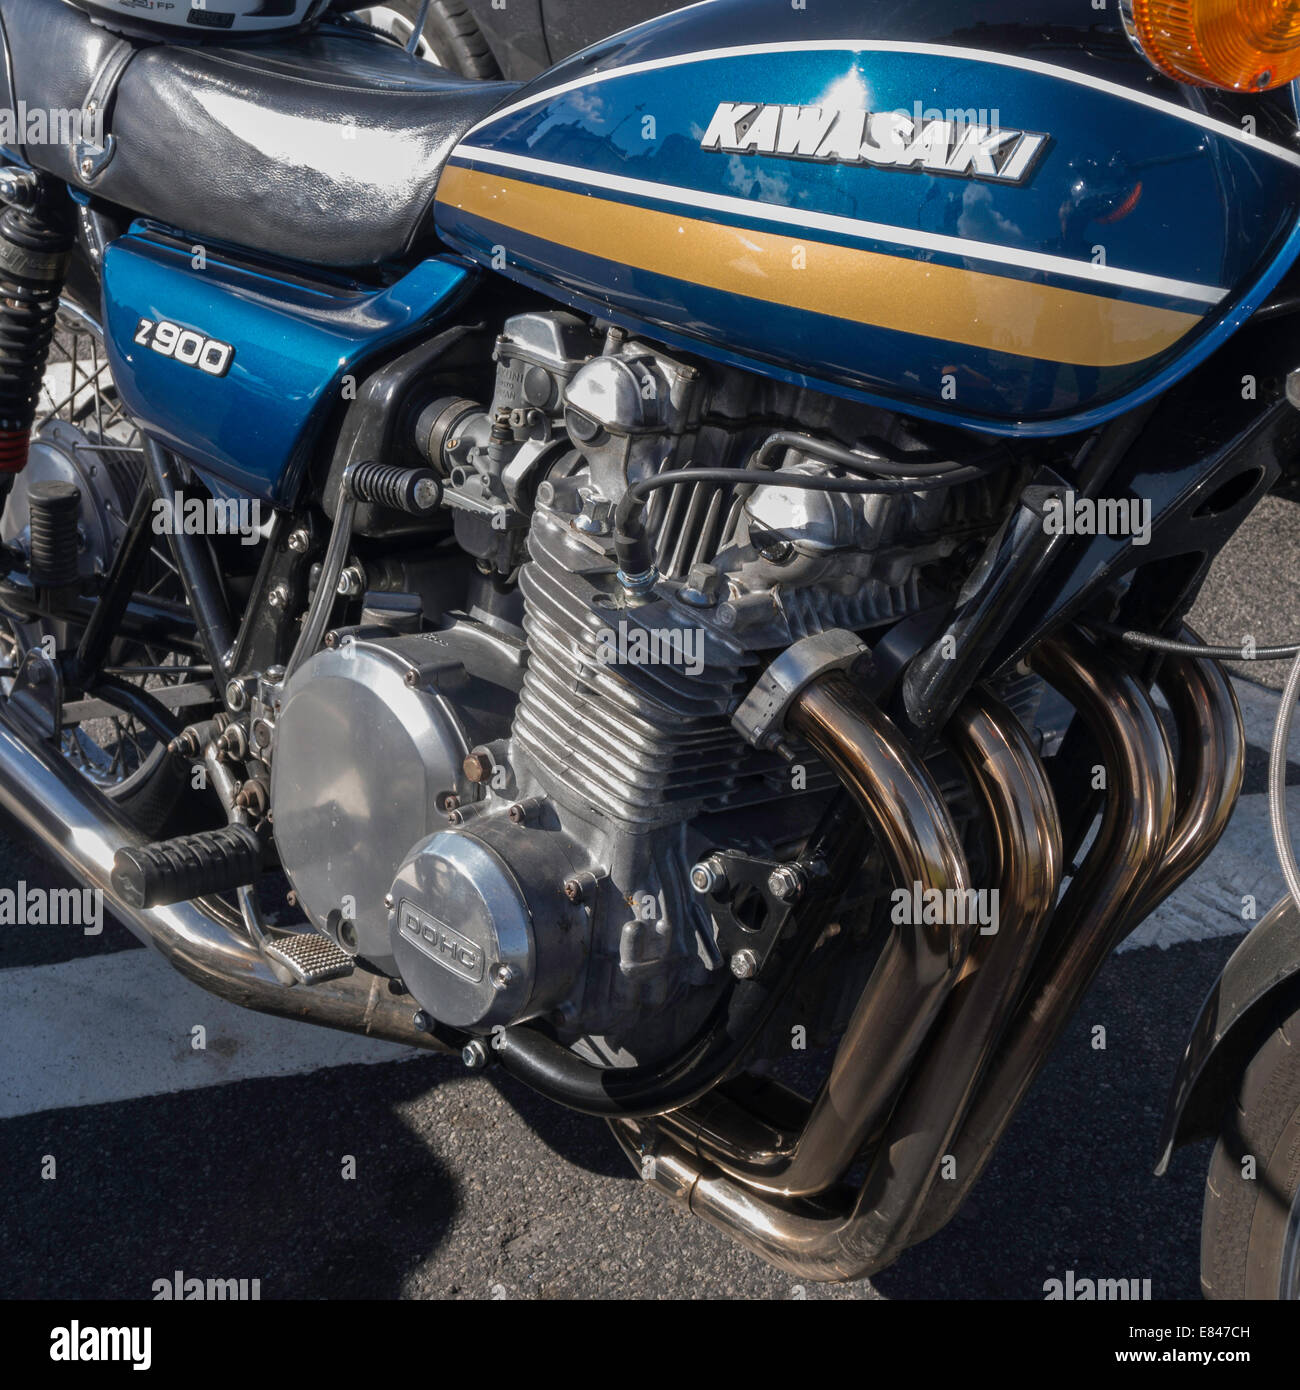 Nahaufnahme des Motors eine klassische Kawasaki Z900 Vierzylinder-Motorrad Stockfoto